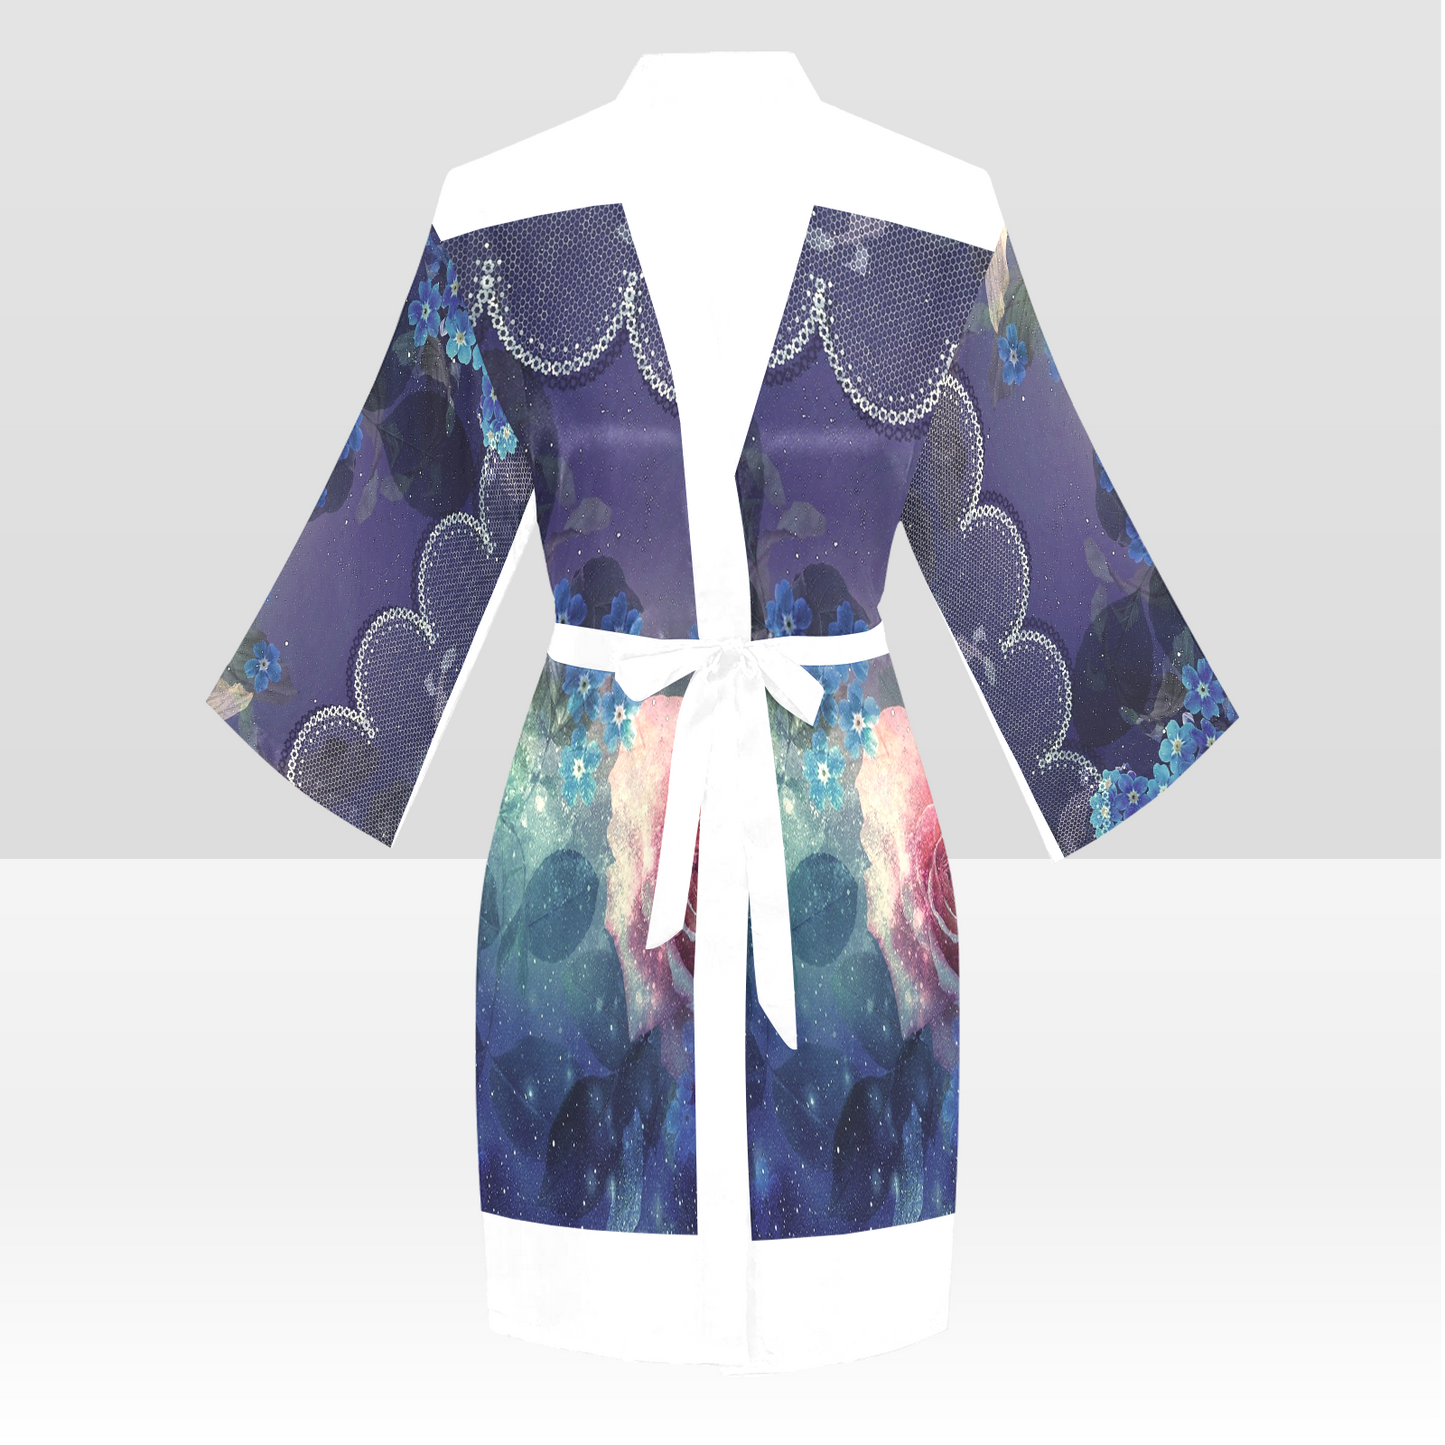 Victorian Lace Kimono Robe, Black or White Trim, Sizes XS to 2XL, Design 02